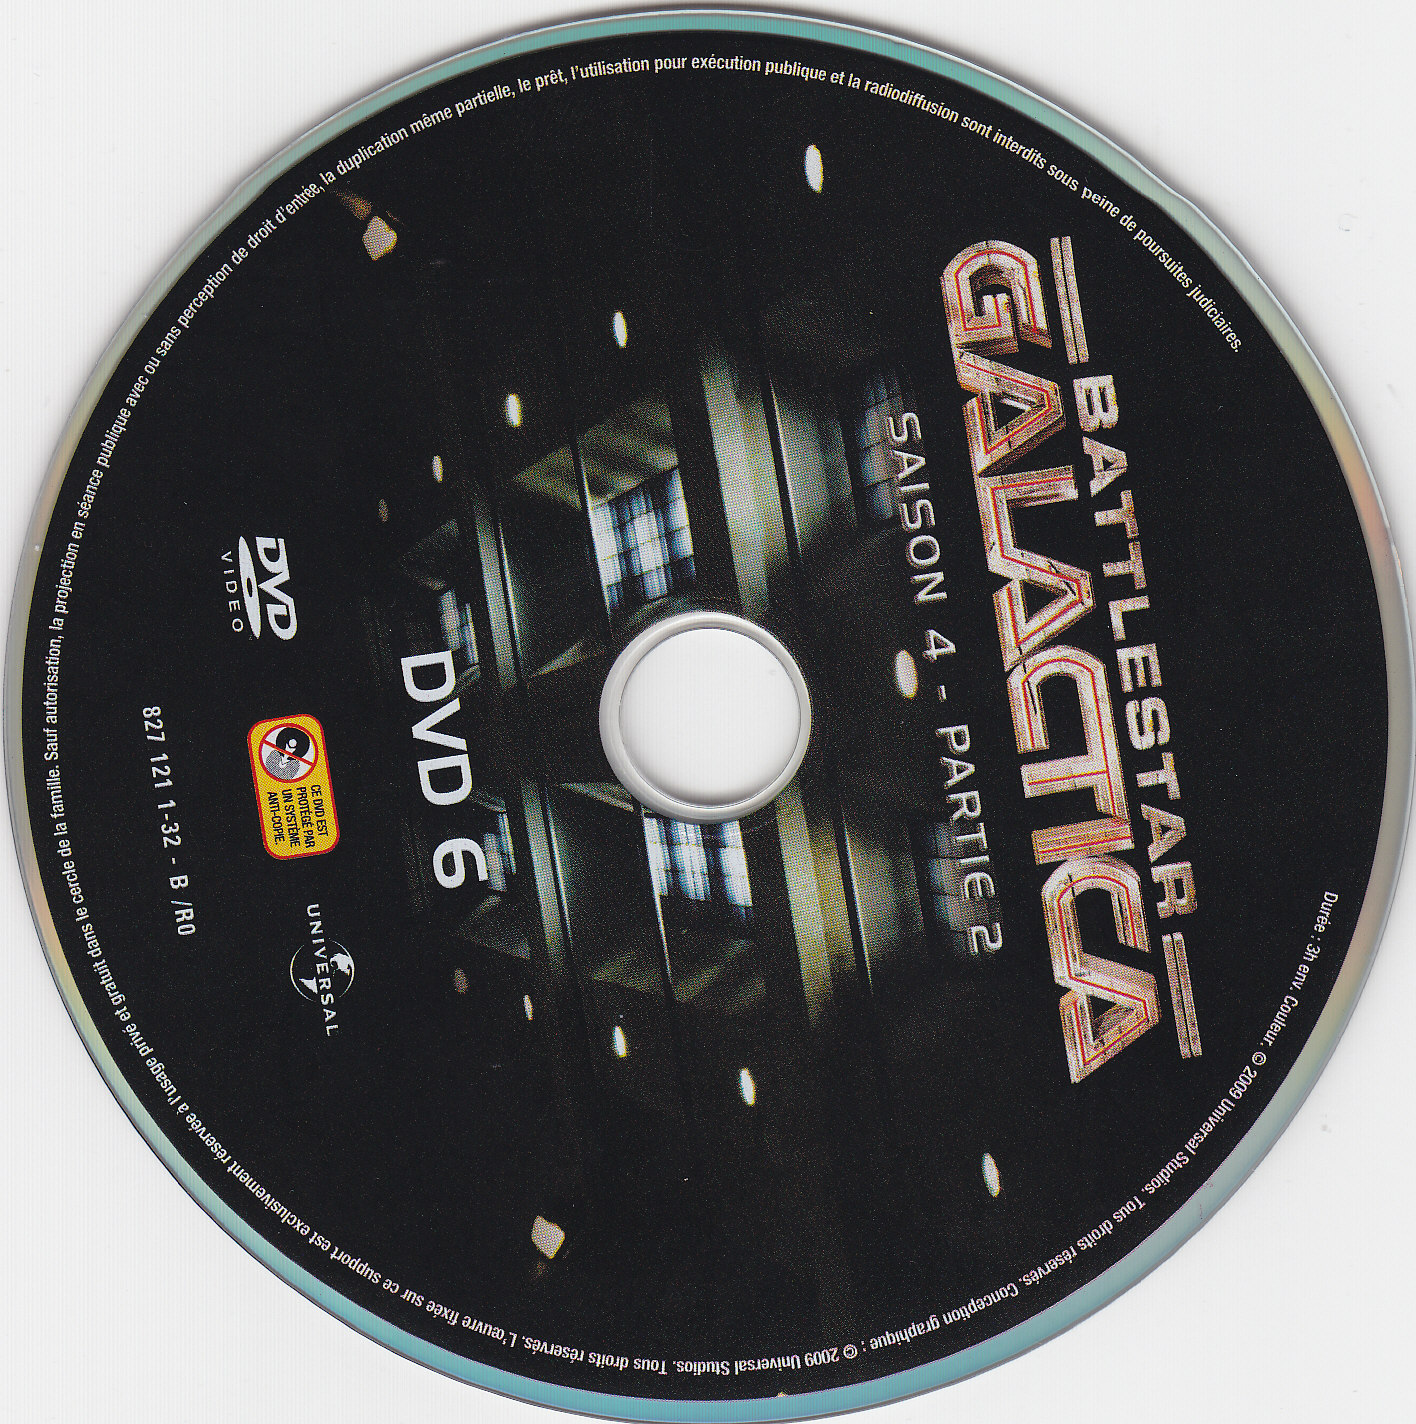 Battlestar Galactica Saison 4 partie 2 DVD 6